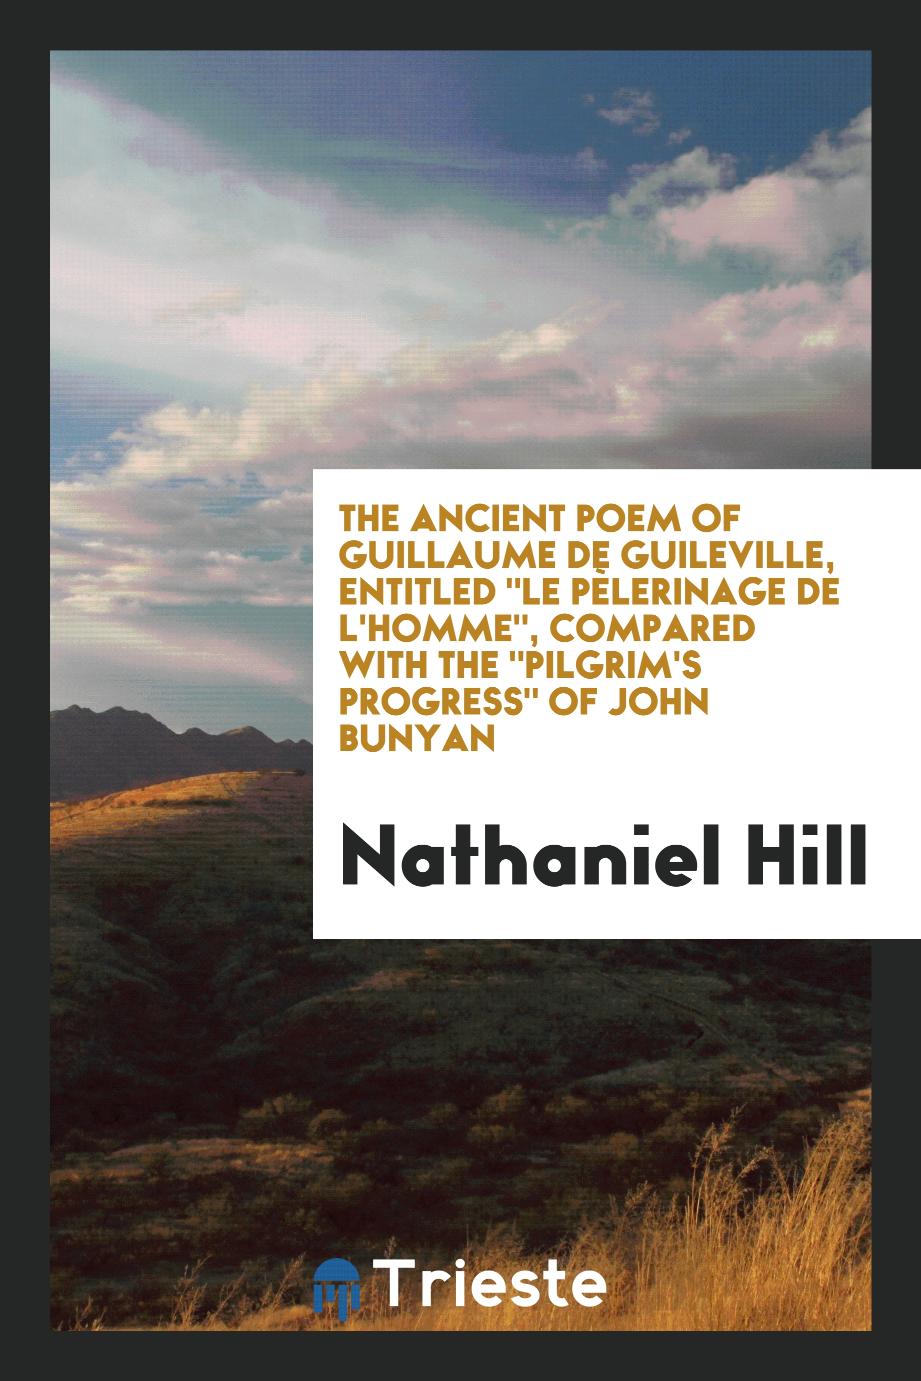 The Ancient Poem of Guillaume De Guileville, Entitled "Le PèLerinage De L'homme", Compared with The "Pilgrim's Progress" of John Bunyan